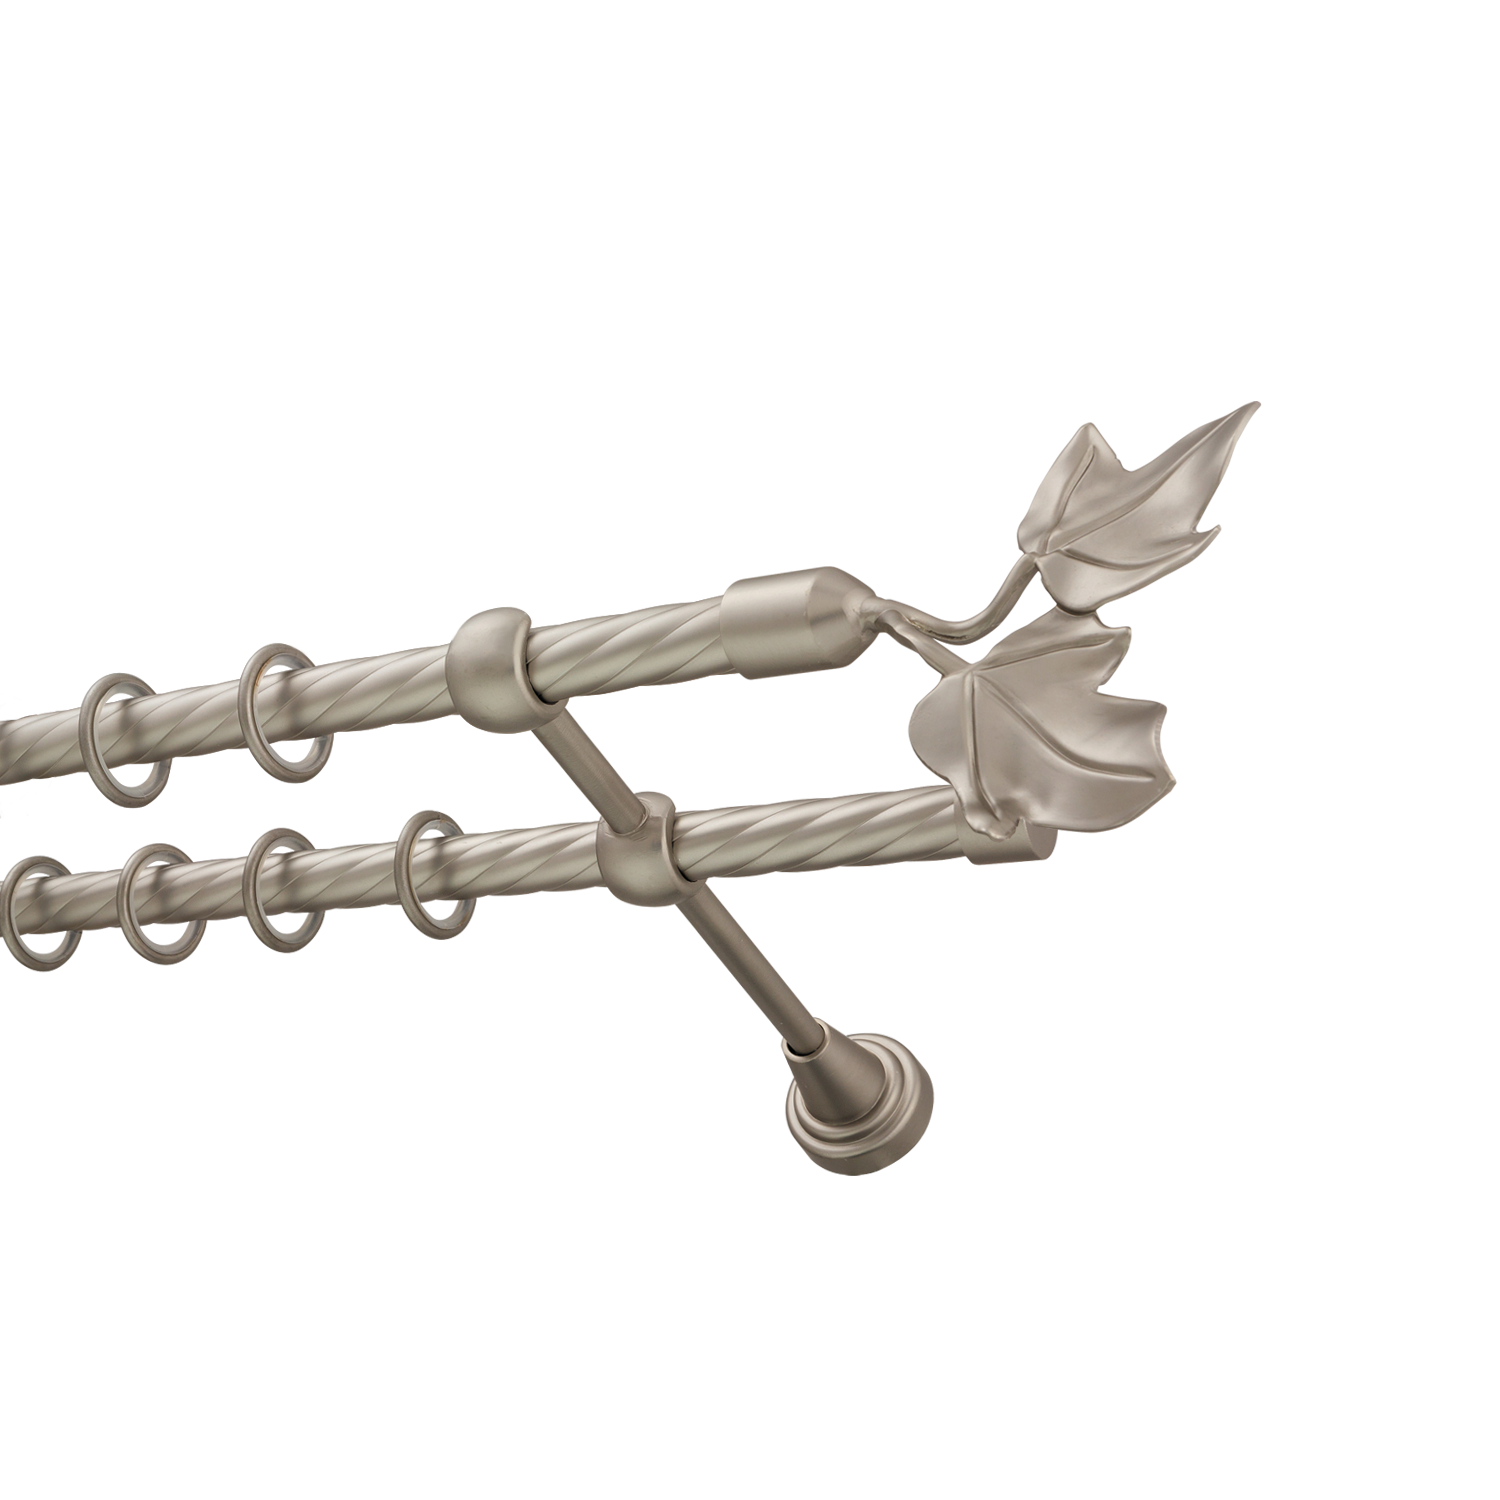 Металлический карниз для штор Листья, двухрядный 16/16 мм, сталь, витая штанга, длина 200 см - фото Wikidecor.ru